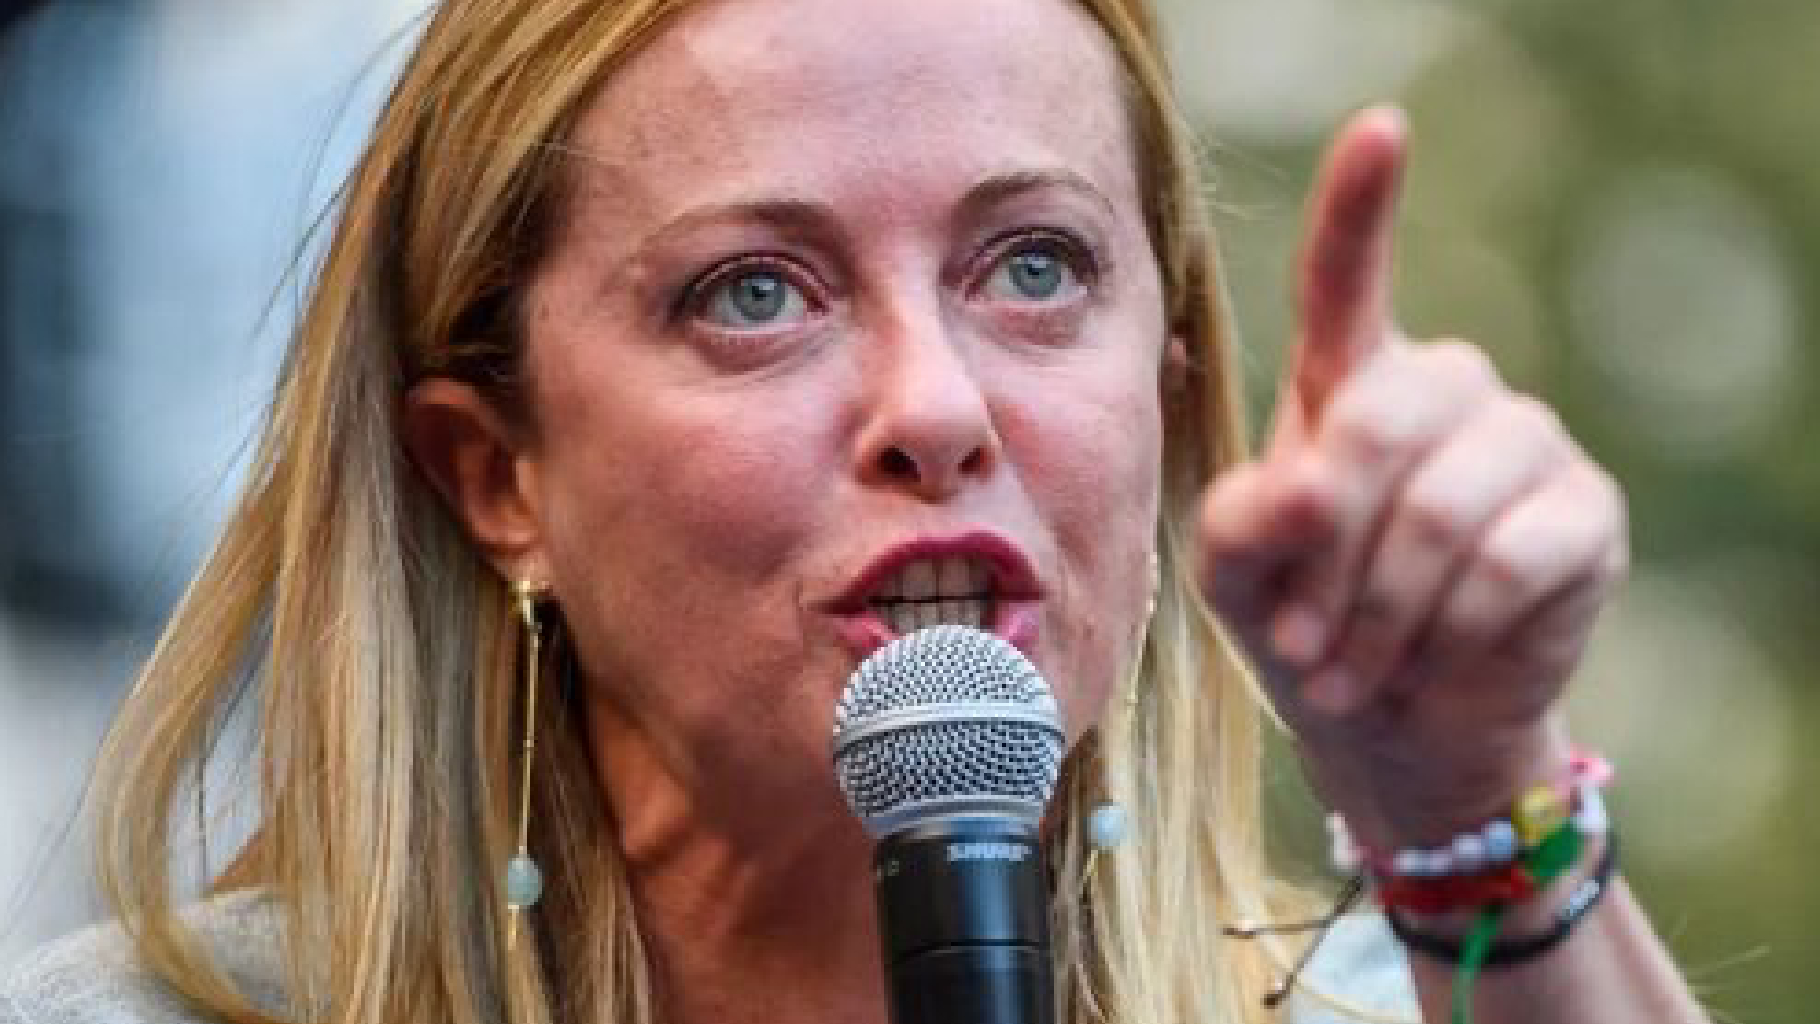 La furia di Giorgia contro Macron e Scholz: “Mi vendicherò”